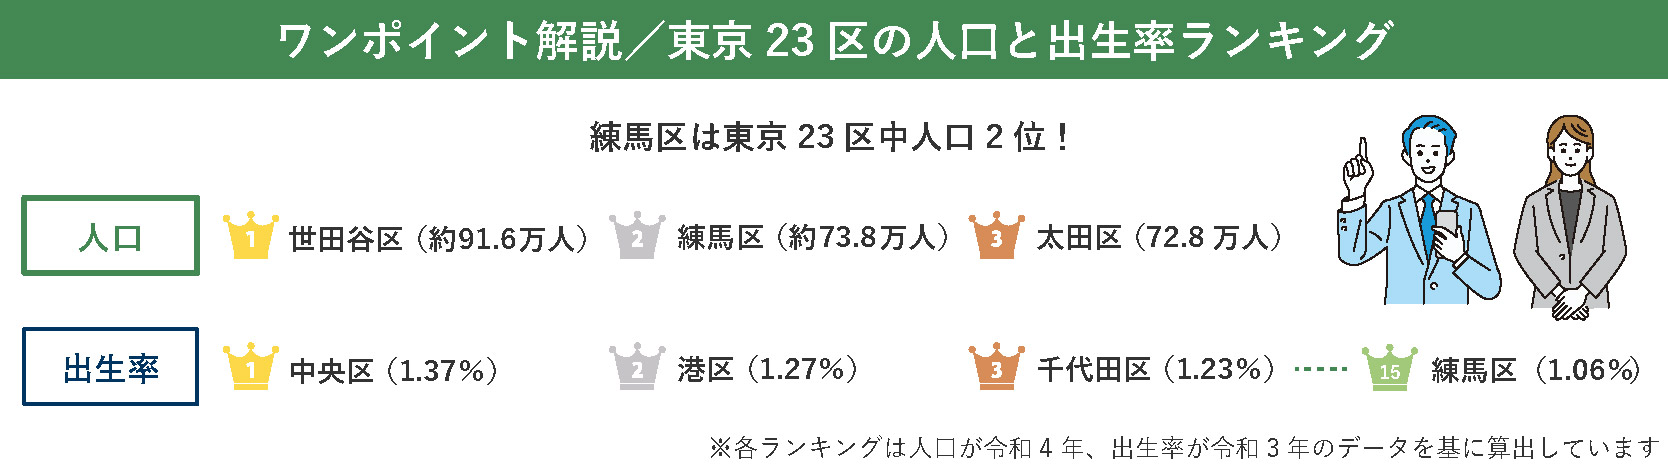 東京23区の人口と出生率ランキング